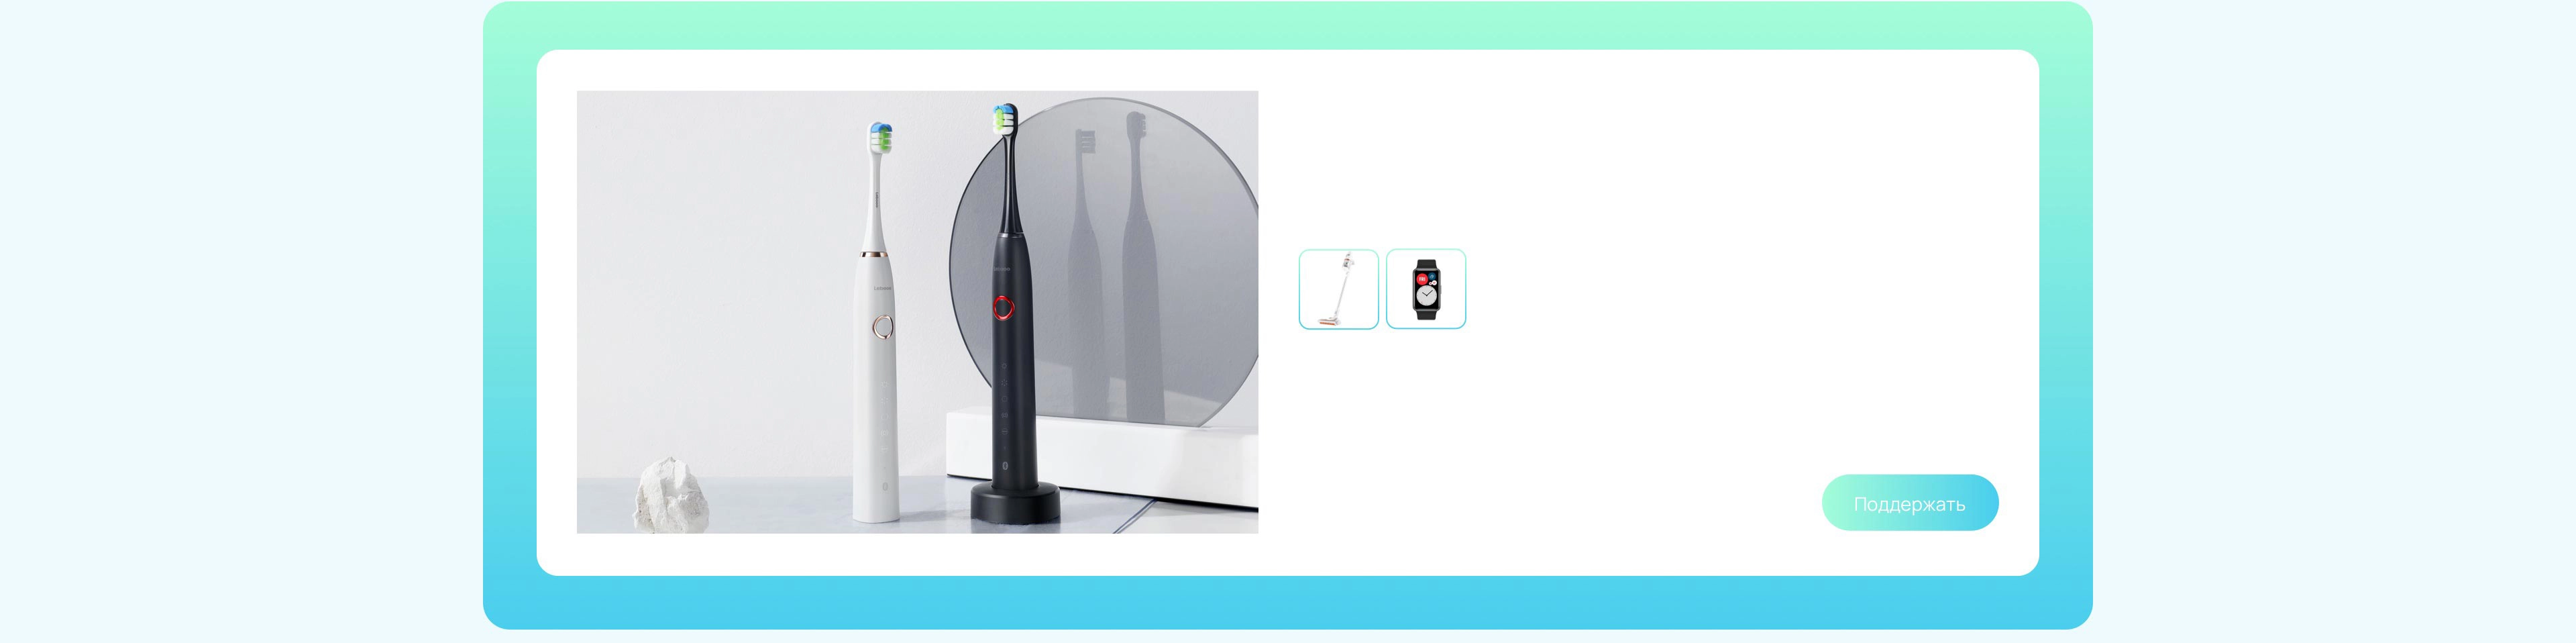 Электрическая зубная щетка Lebooo Smart Sonic с поддержкой Huawei HiLink